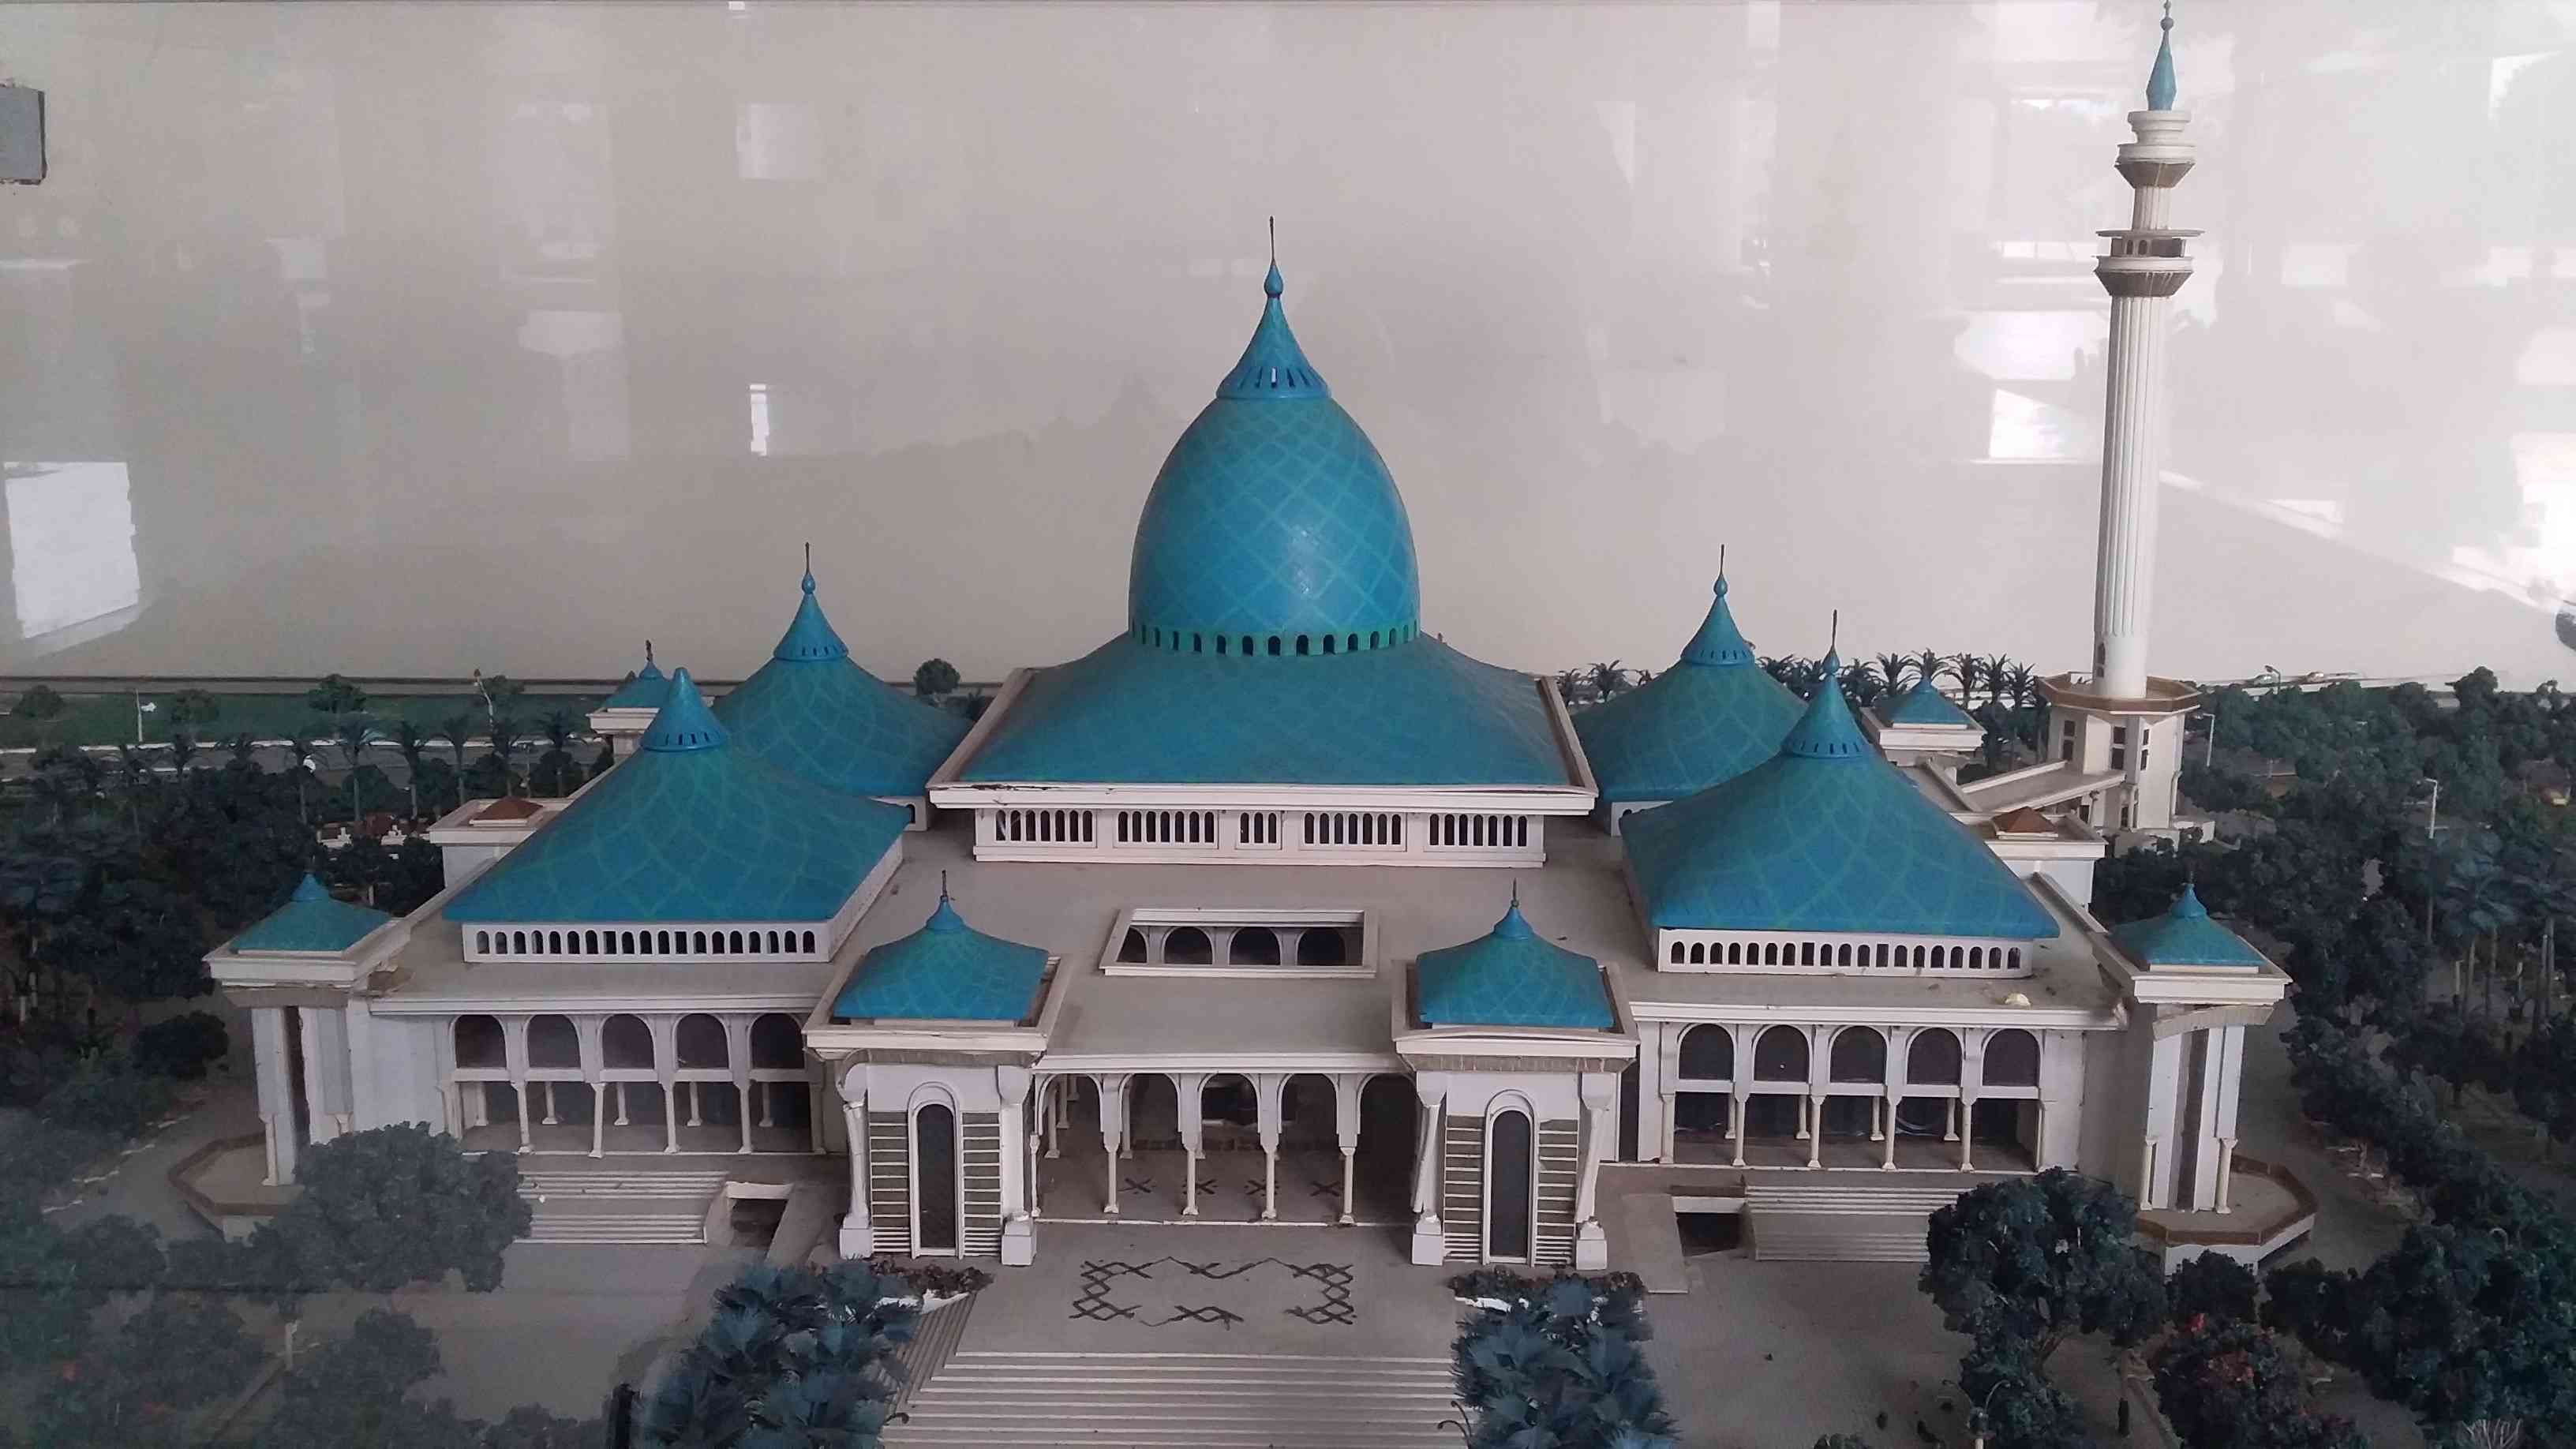 Maket Masjid Al-Akbar, dokpri. 